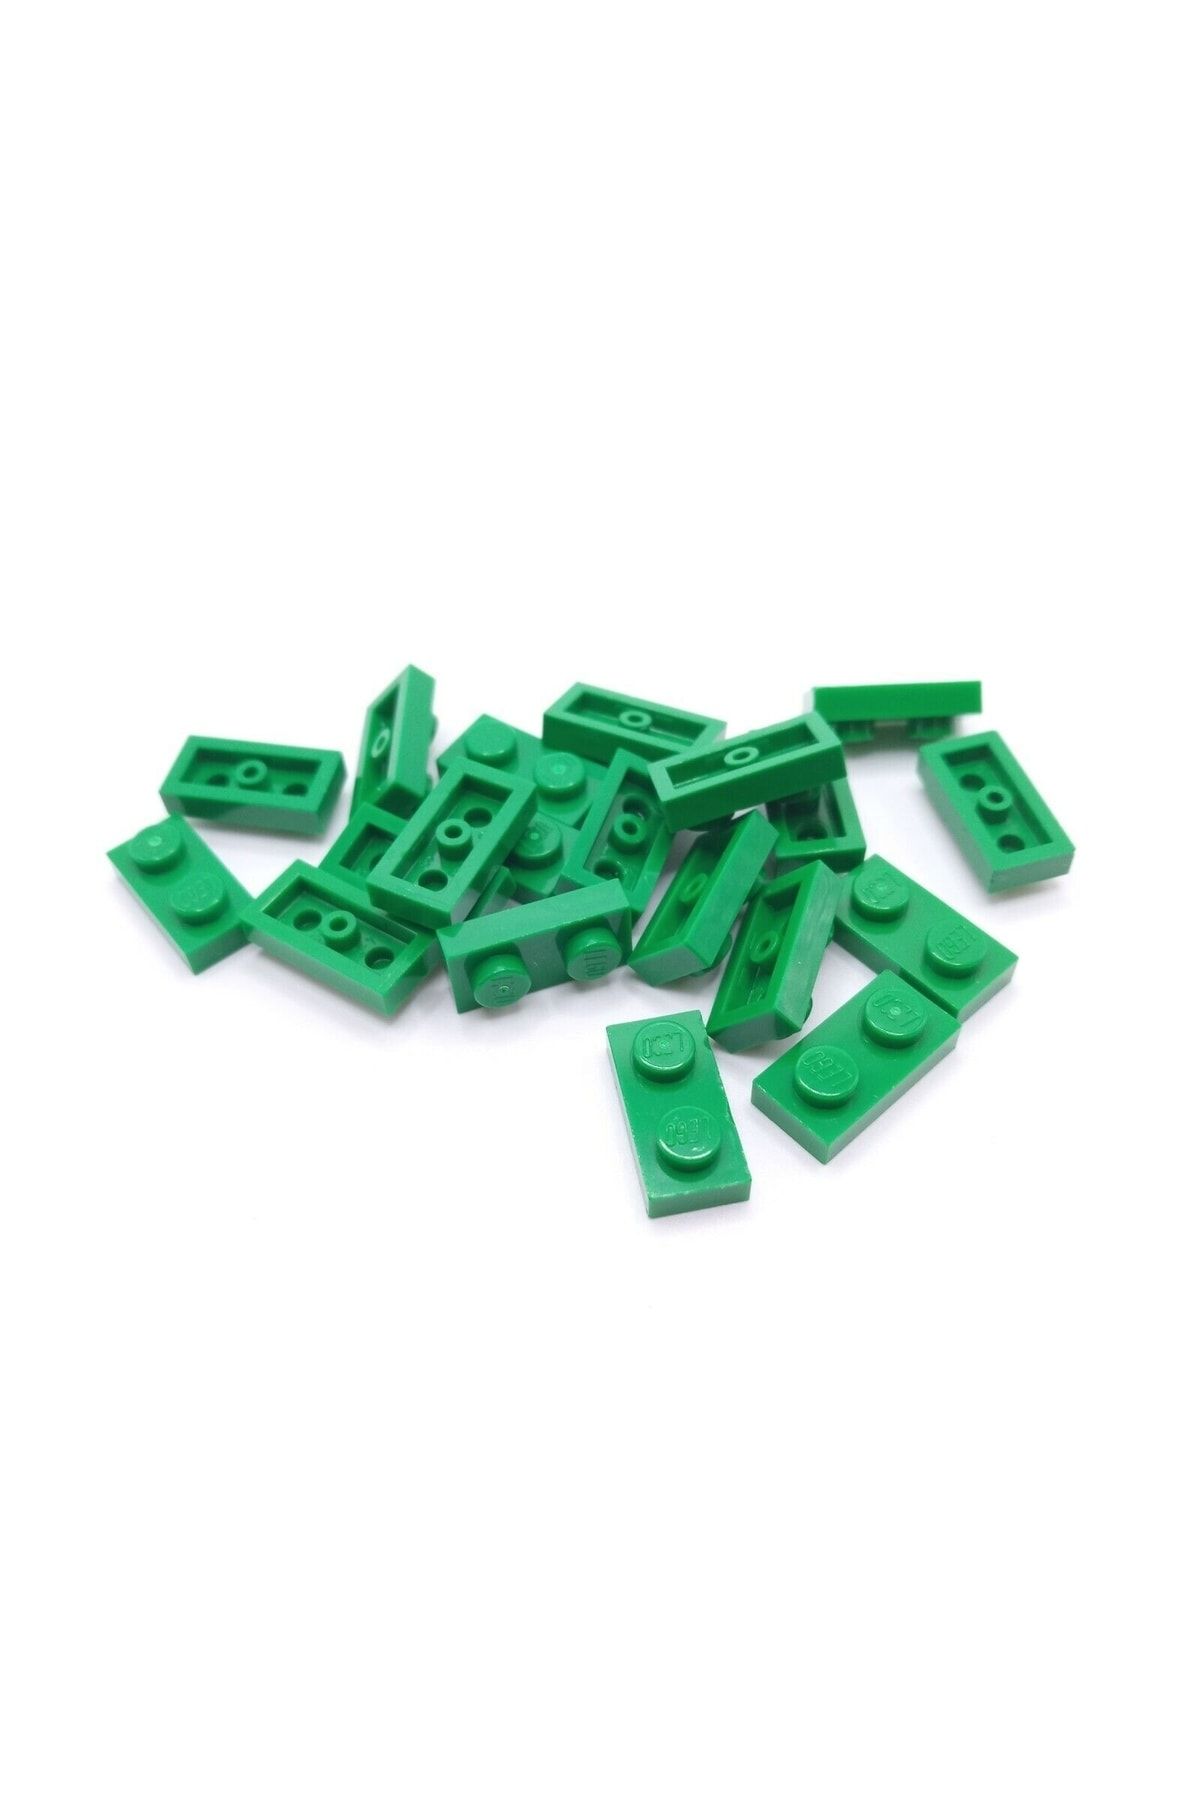 LEGO صفحه سازنده لوازم جانبی سفارشی Moc اصلی 1 X 2 آجری مسطح سبز 10 تکه ارسال خواهد شد plate3023سبز